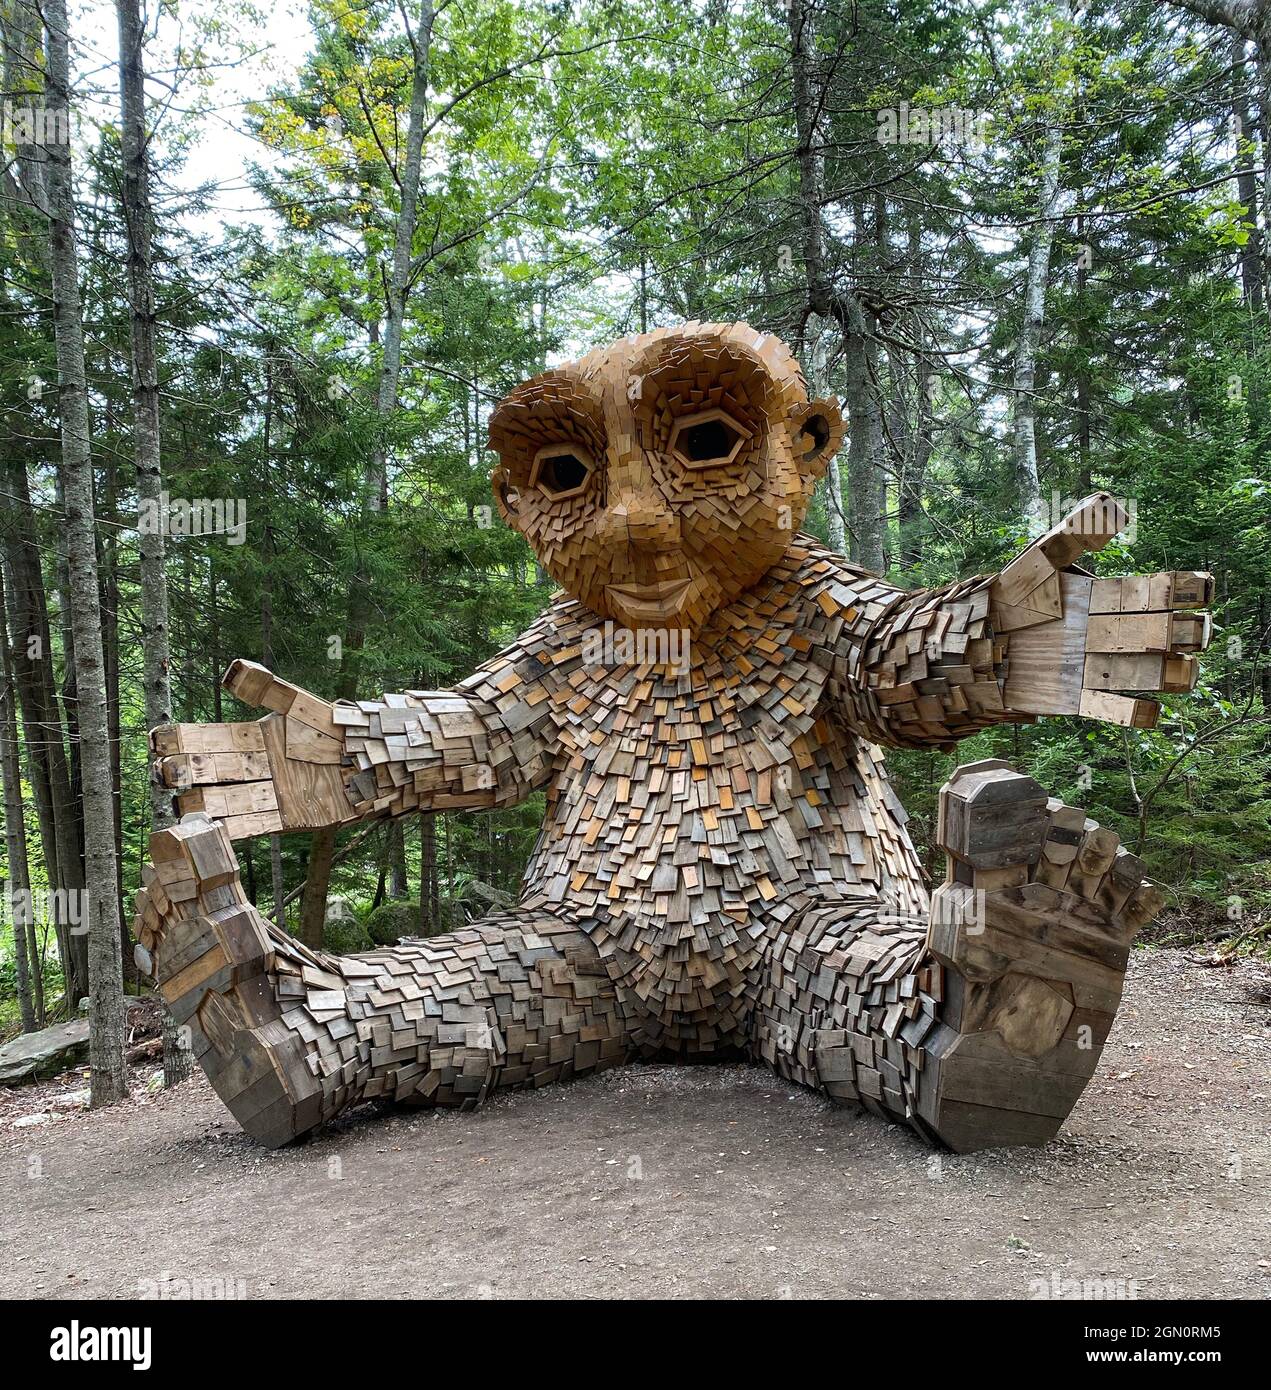 Leija est l'un des cinq trolls des jardins botaniques côtiers de Boothbay, Maine. Elle est le bébé troll (seulement 12 pieds de haut) et représente les fleurs de l'arbre. L'artiste est Thomas Dambo, et il fabrique, tous à partir de matériaux recyclés, la tête, les mains et les pieds dans son studio de Copenhague, au Danemark. Il les expédie ensuite partout où ils vont dans le monde. Une fois dans leur « maison », les matériaux recyclés sont rassemblés pour fabriquer les corps. Pour les jardins du Maine, environ 750 palettes ont été utilisées. Banque D'Images